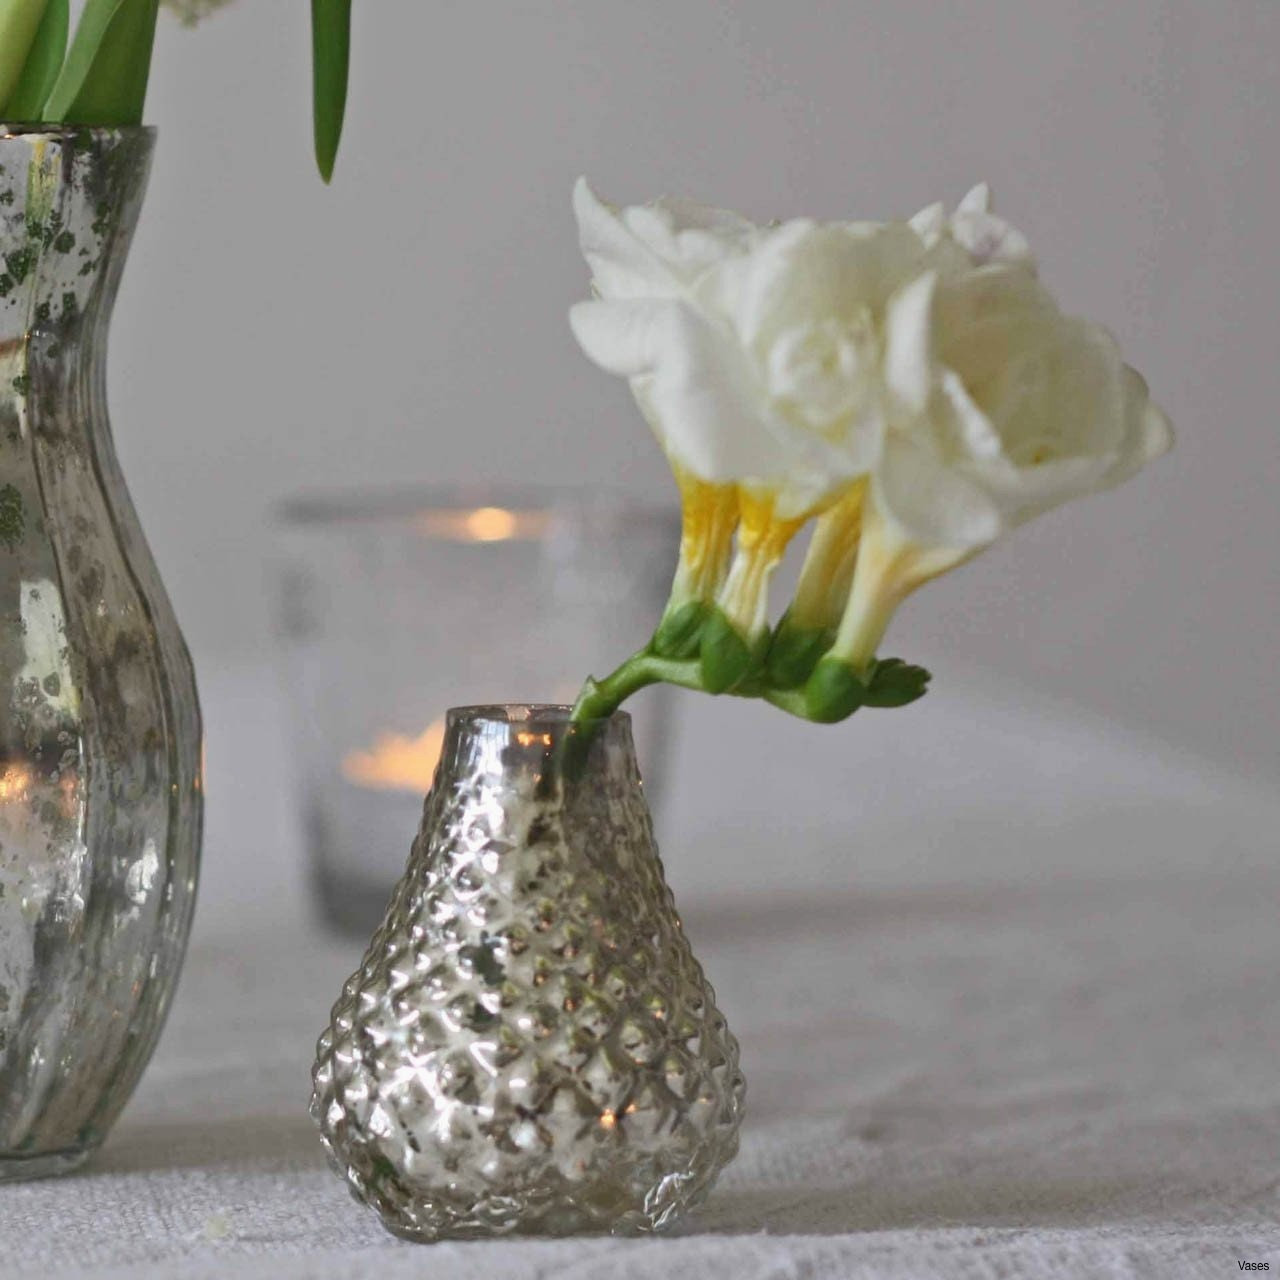 26 Nice Bathroom Flower Vase Decorative vase Ideas